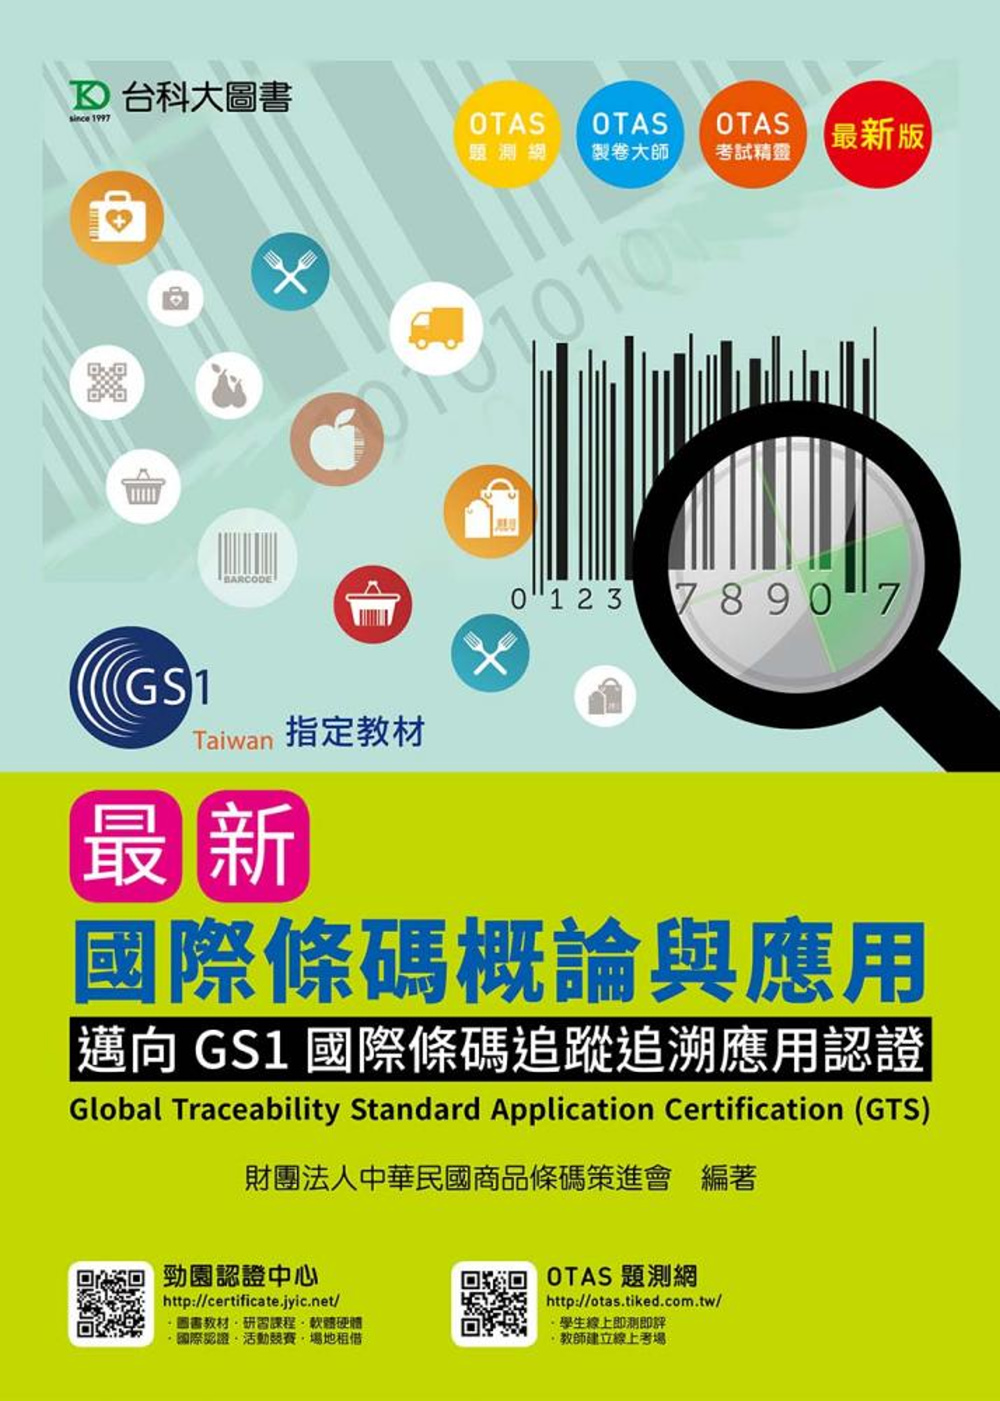 最新國際條碼概論與應用-邁向GS1國際條碼追蹤追溯應用認證 Global Traceability Standard Application Certification (GTS)-最新版-附贈OTAS題測系統